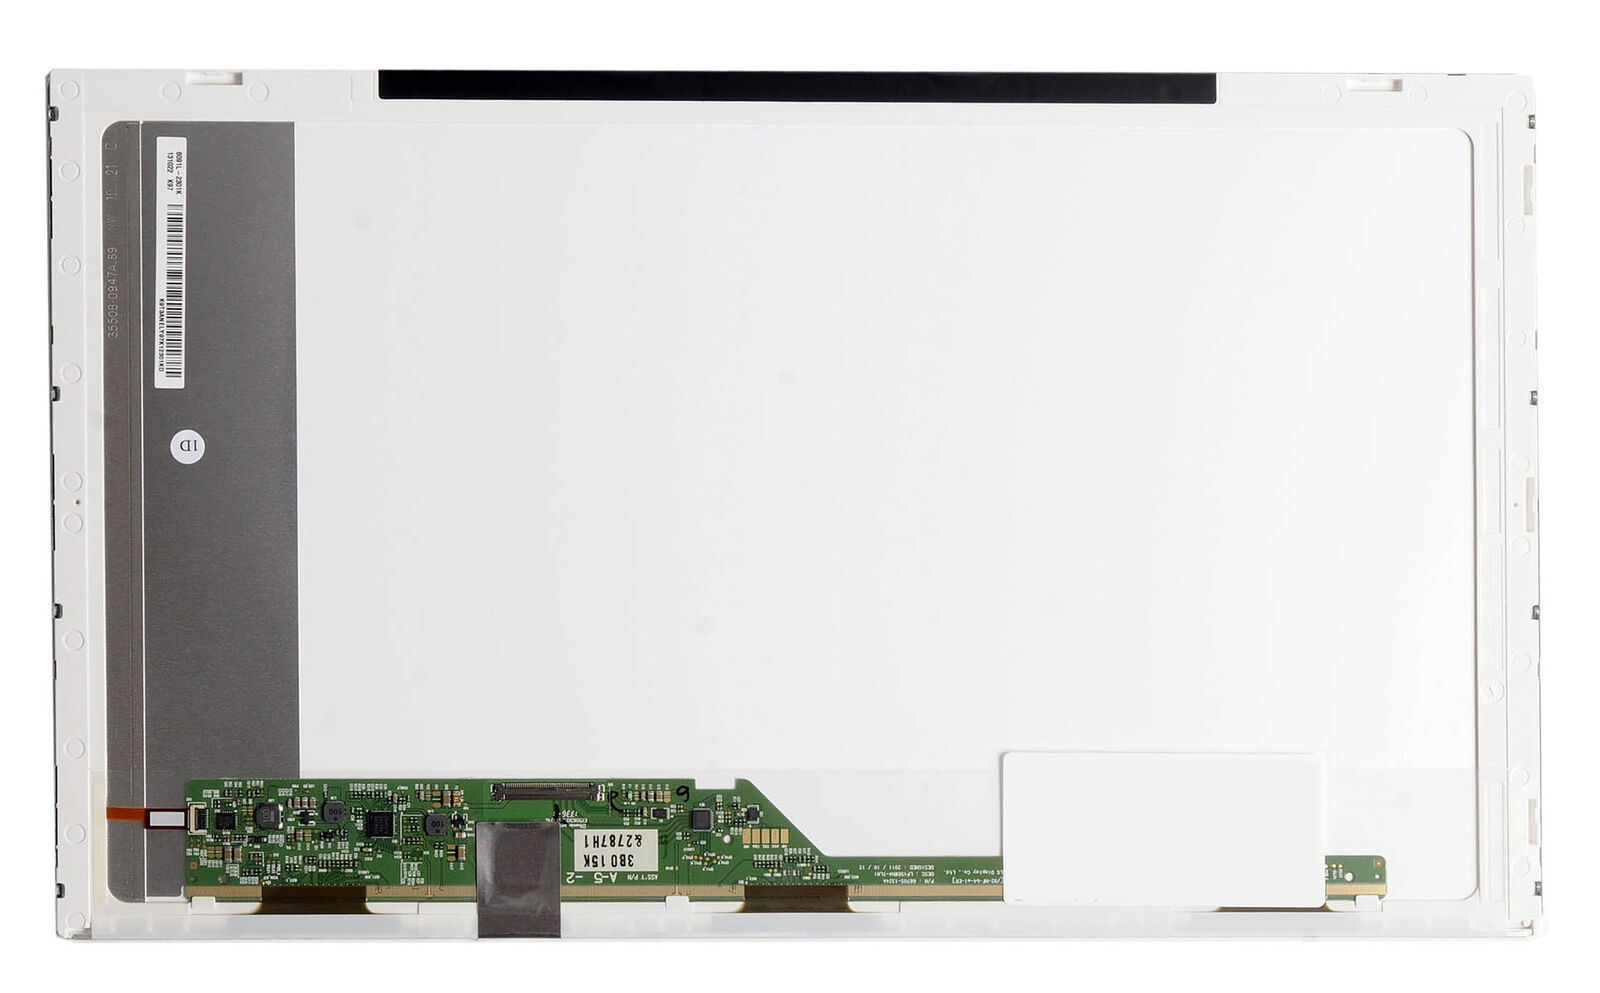 NEW IBM-LENOVO THINKPAD L520 7859-35U 15.6 LED LCD SCREEN